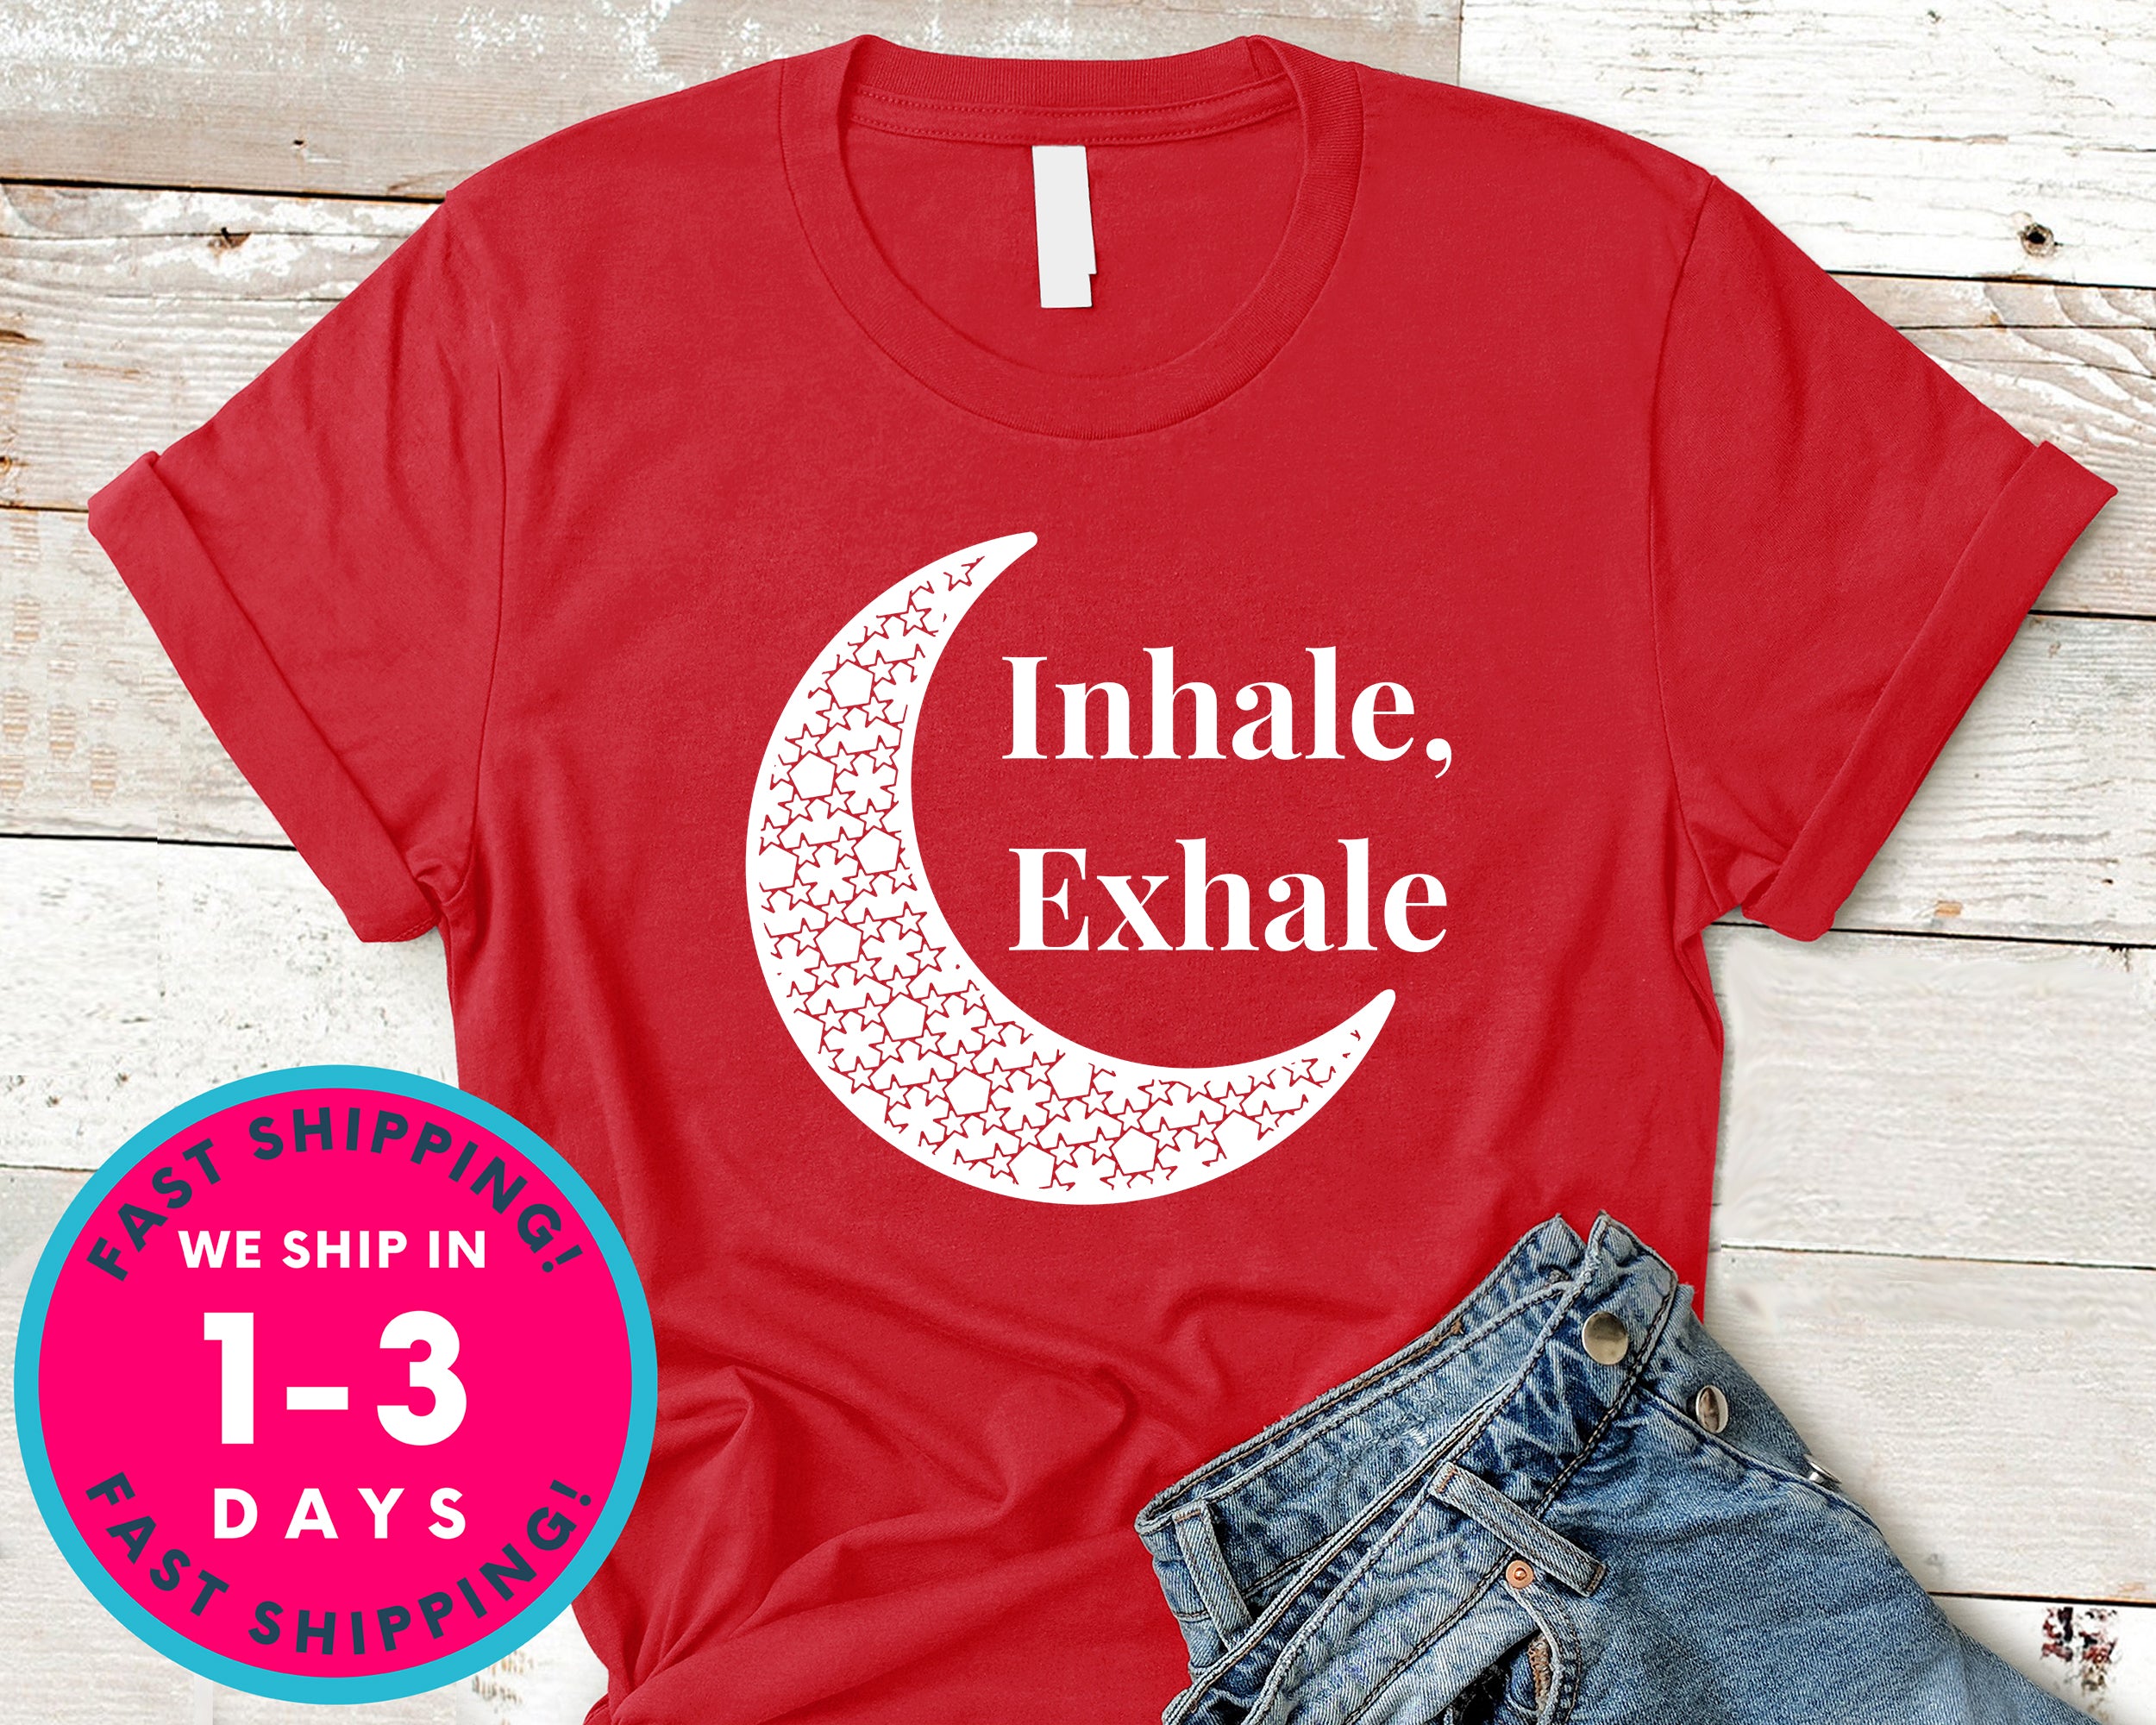 Women Tee Inhale Exhale T-Shirt - Yoga Zen Shirt